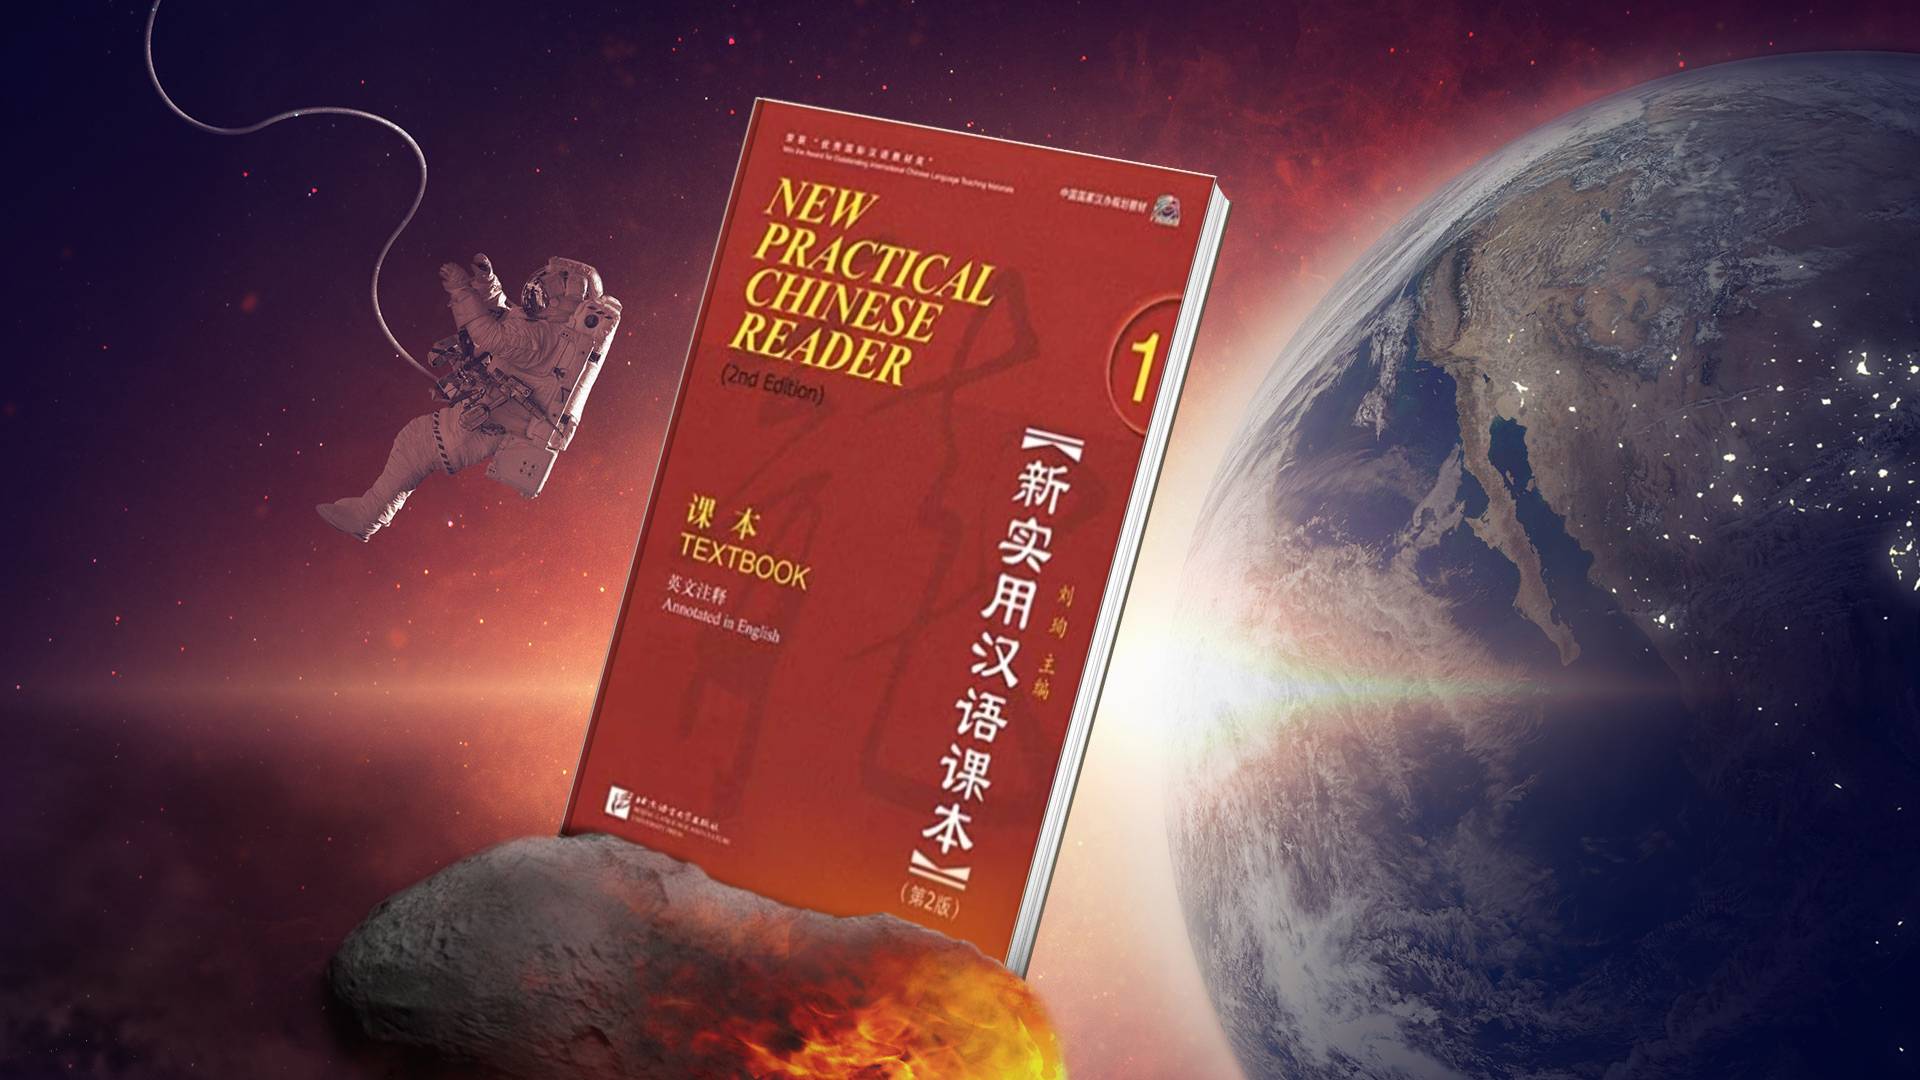 خرید کتاب زبان چینی | فروشگاه اینترنتی کتاب زبان | New Practical Chinese Reader Volume 1 Textbook 2nd Edition | نیو پرکتیکال چاینیز ریدر تکست بوک یک ویرایش دوم